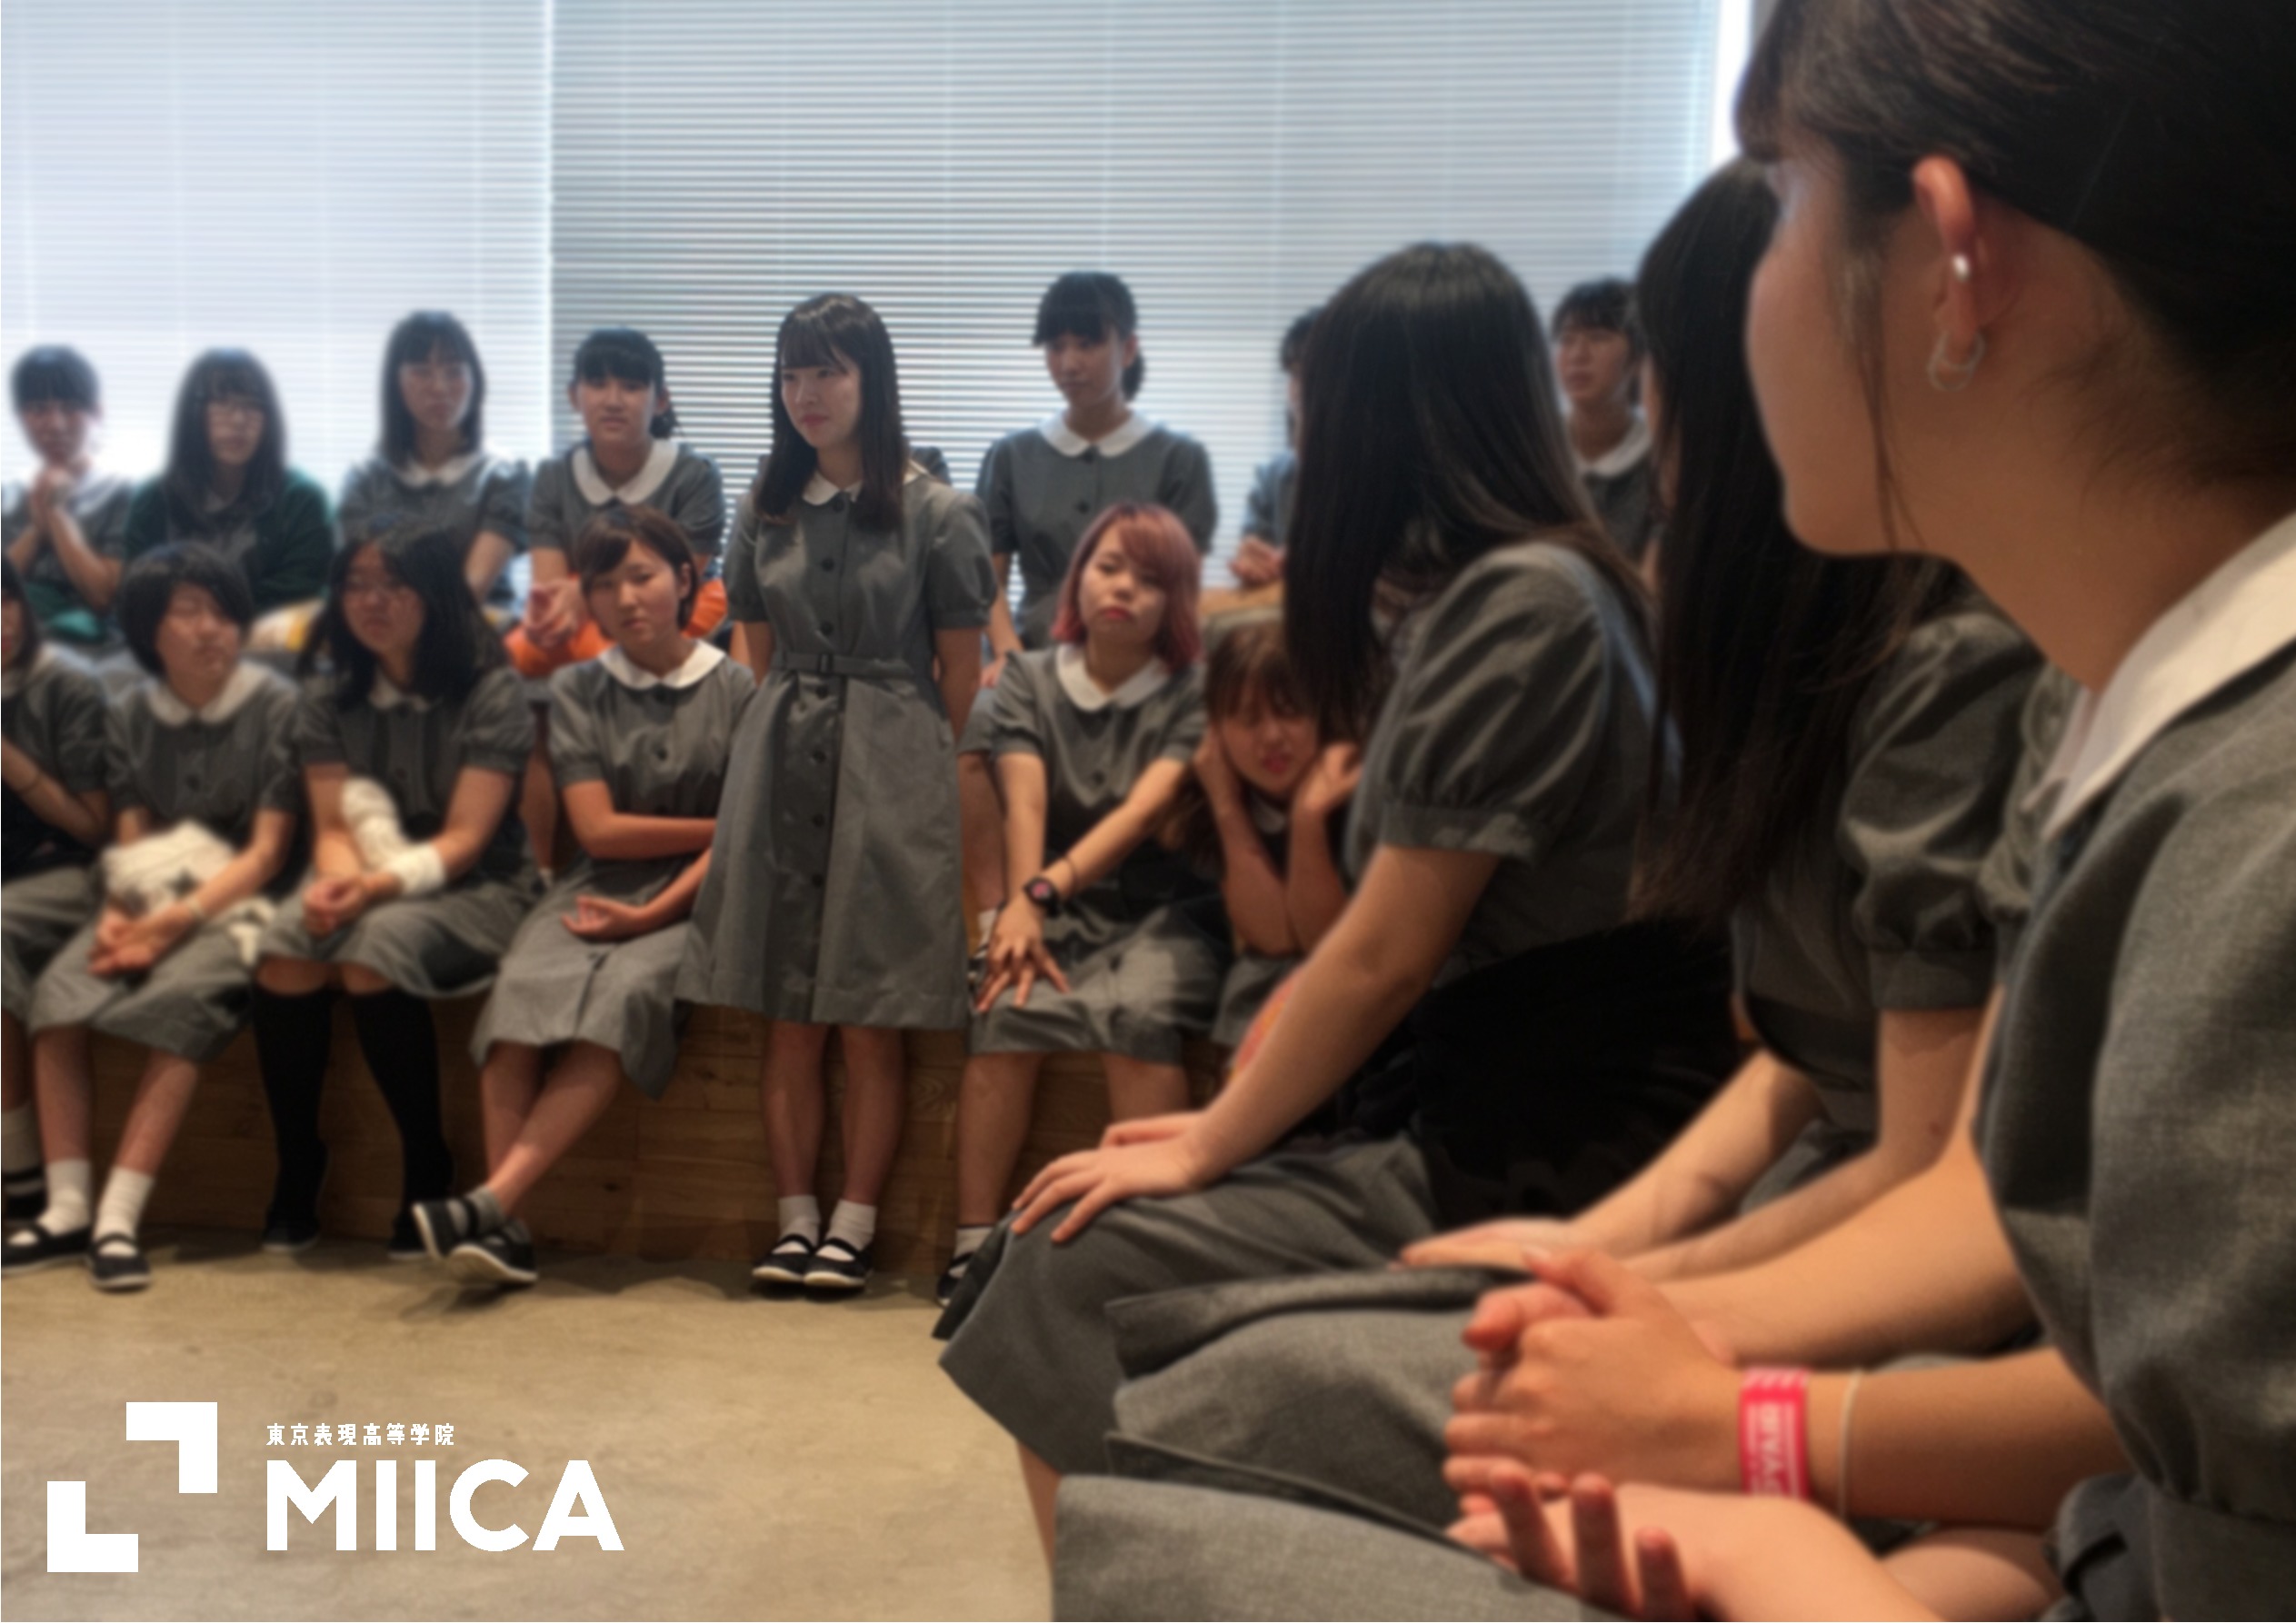 夏休み 明けました 東京表現高等学院 Miica クリエイター 作家 アーティストを目指すなら